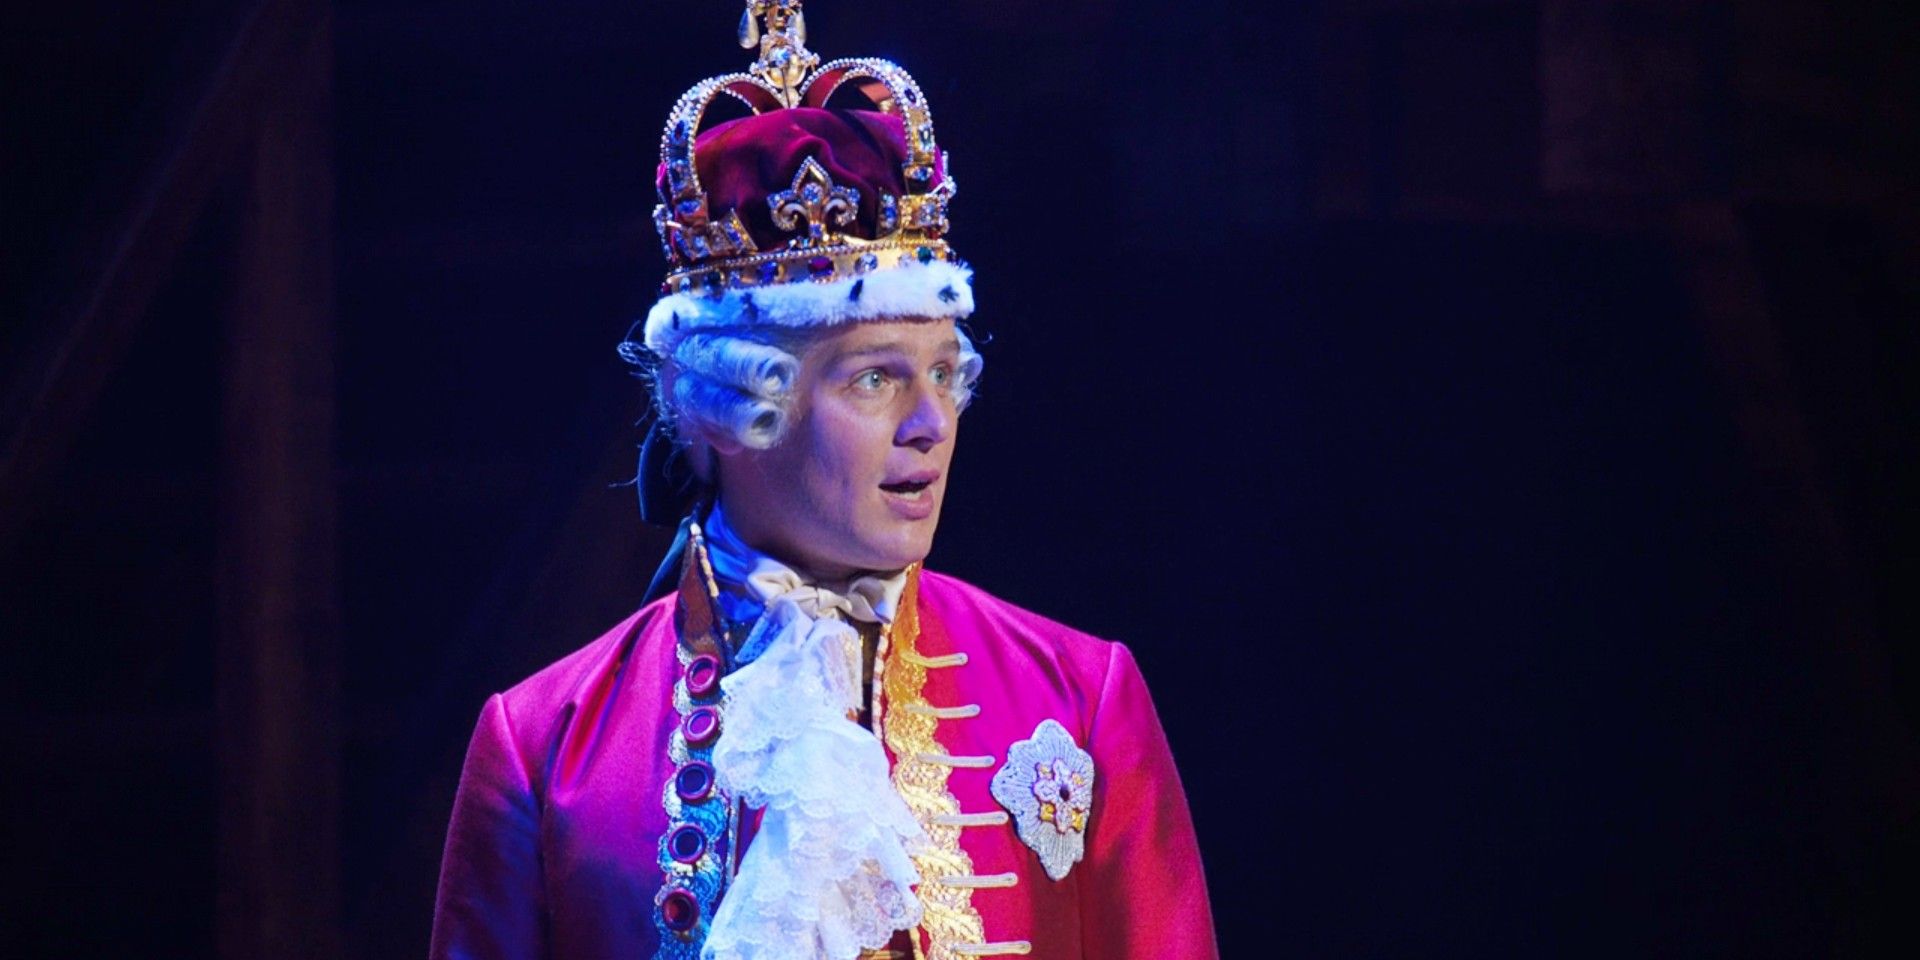 Jonathan Groff as King George III in Hamilton